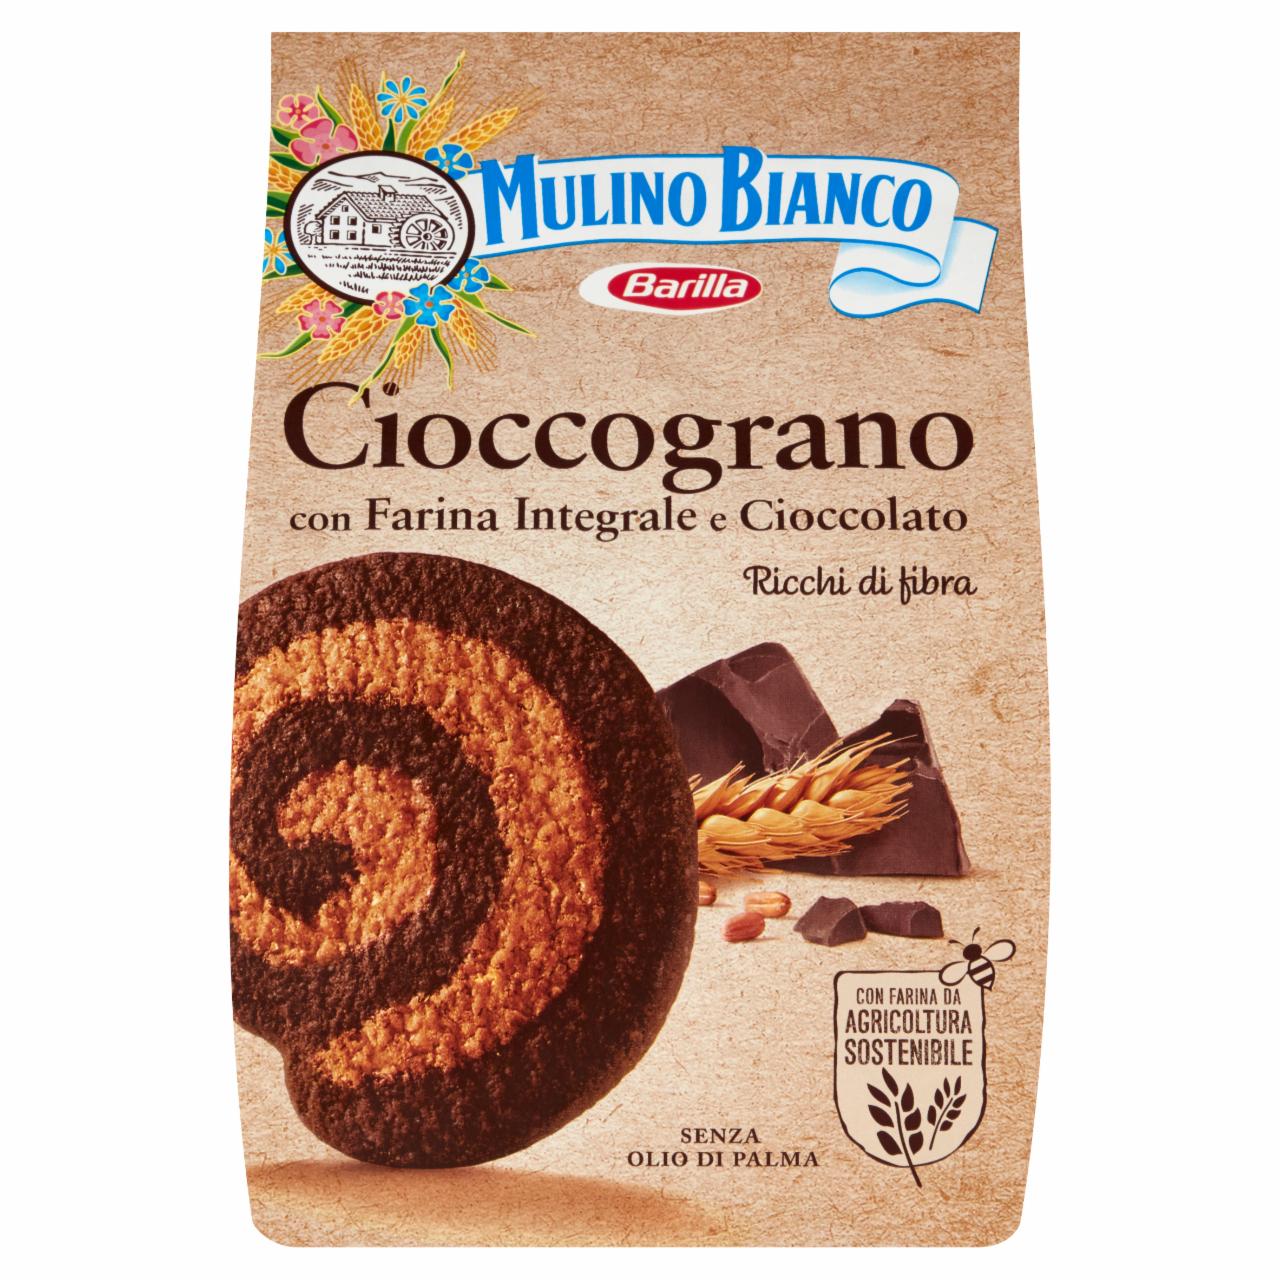 Képek - Barilla Cioccograno csokoládés omlós keksz teljes kiörlésű liszttel 330 g